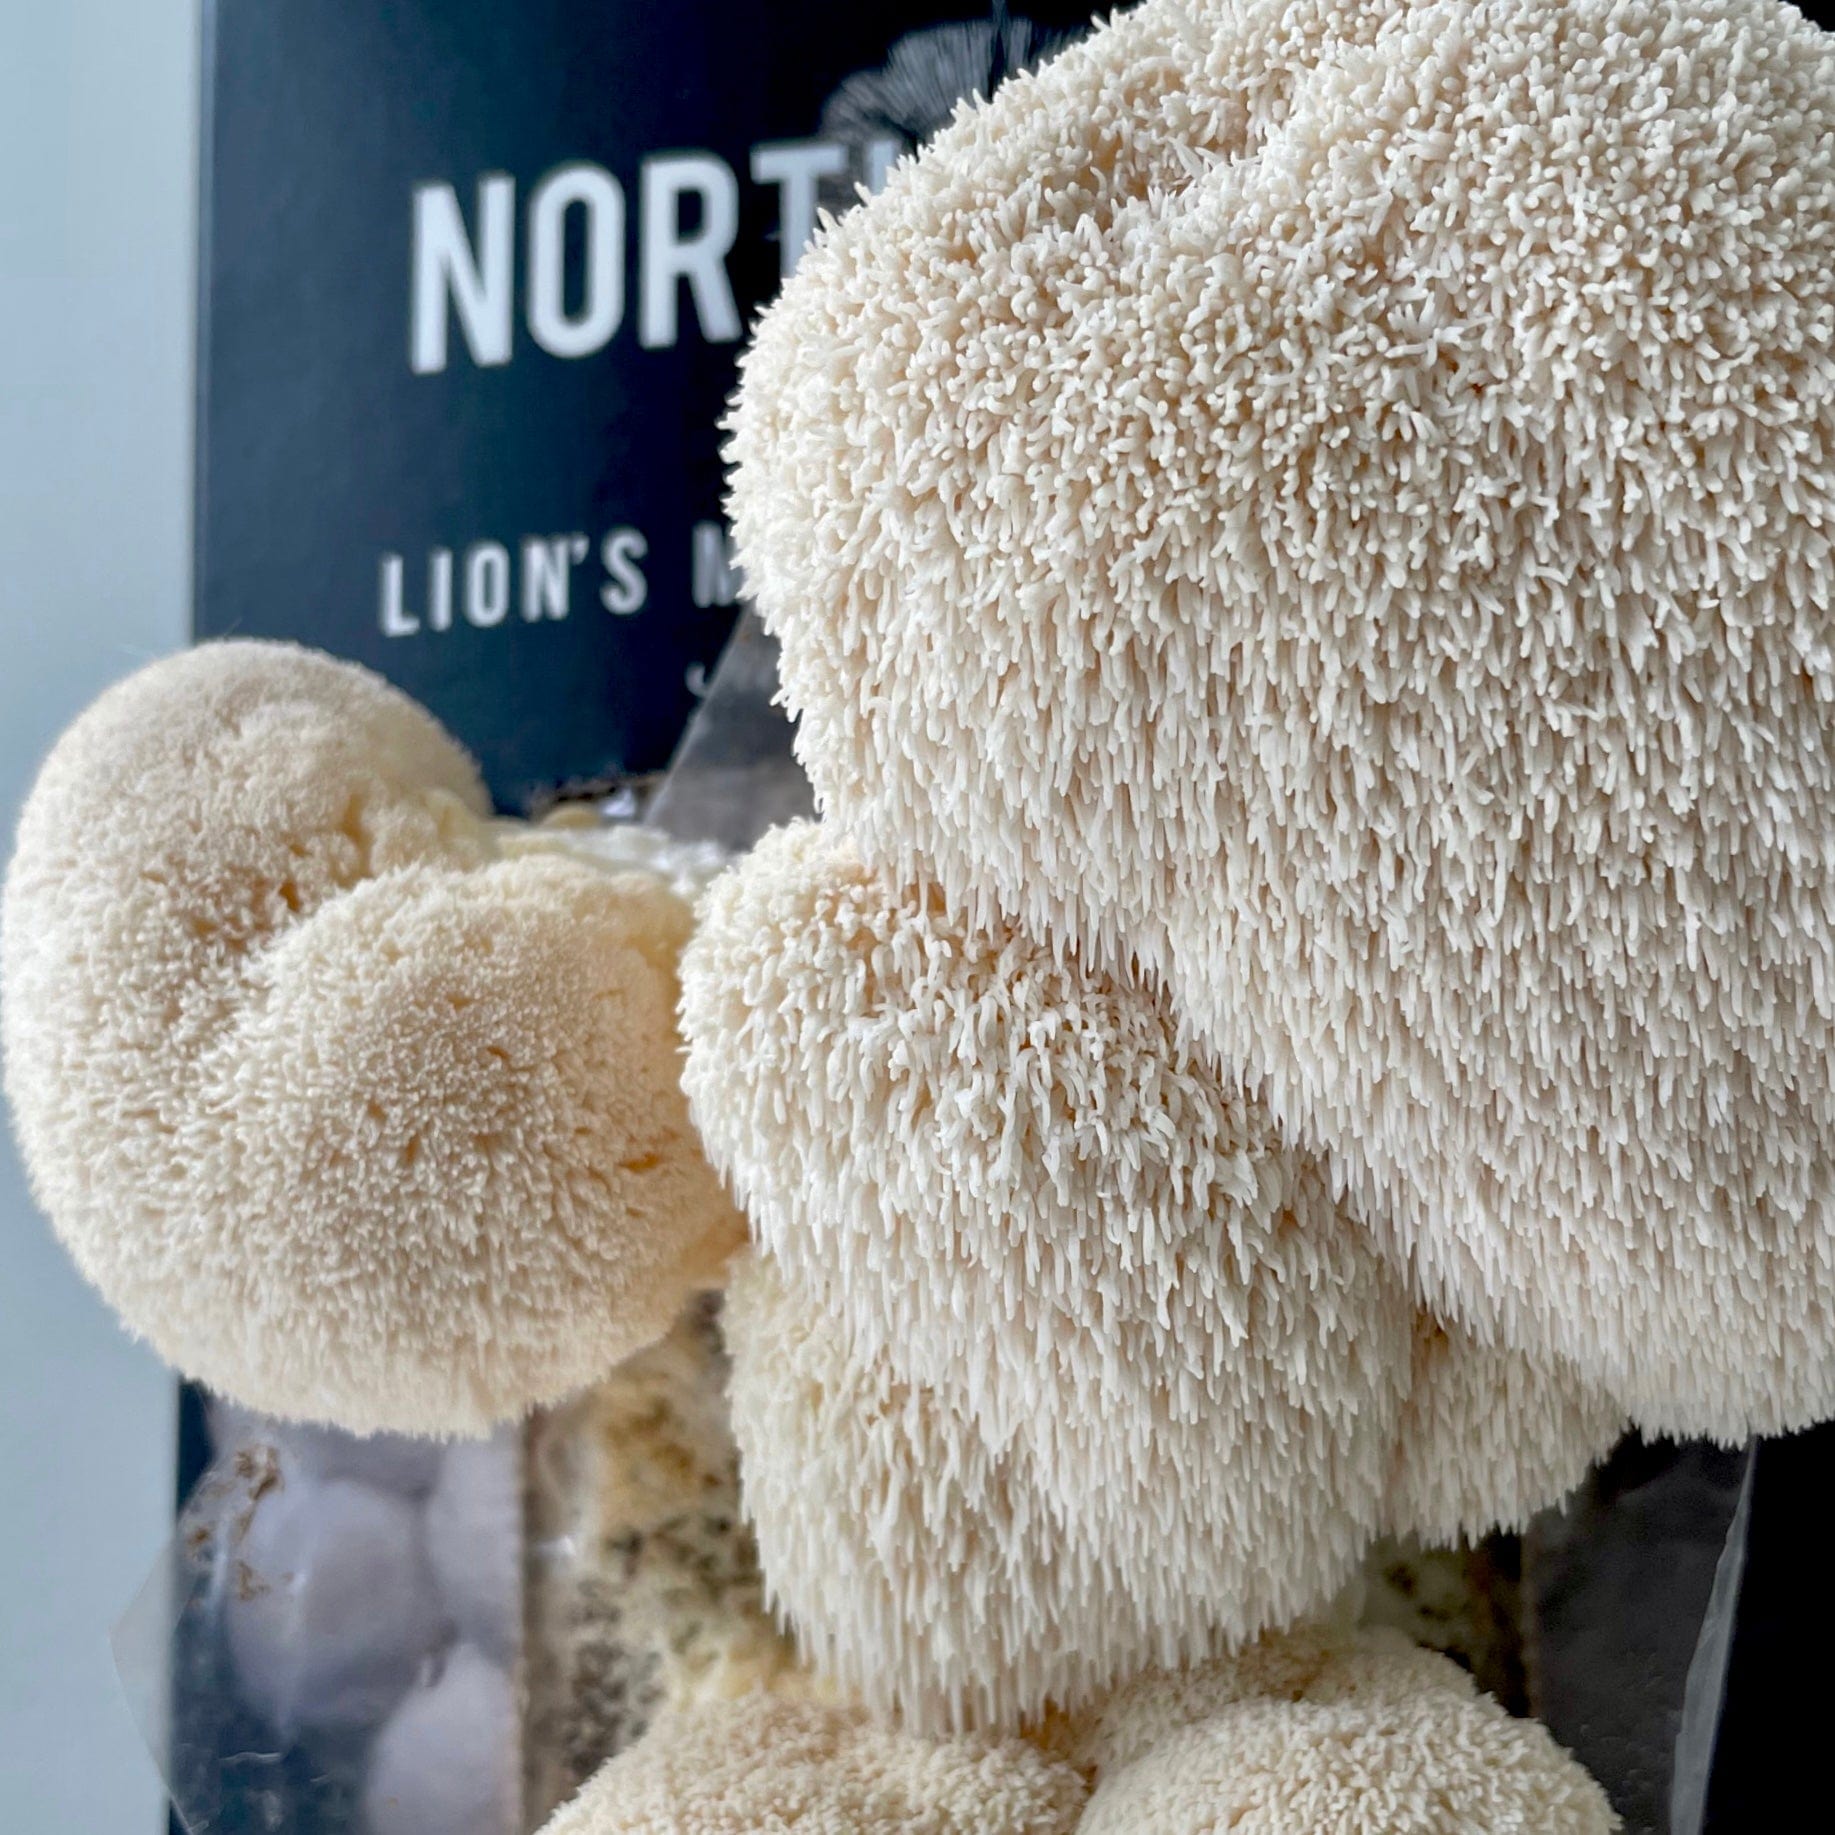 Lion's Mane Mushroom Spray & Grow Kit by North Spore